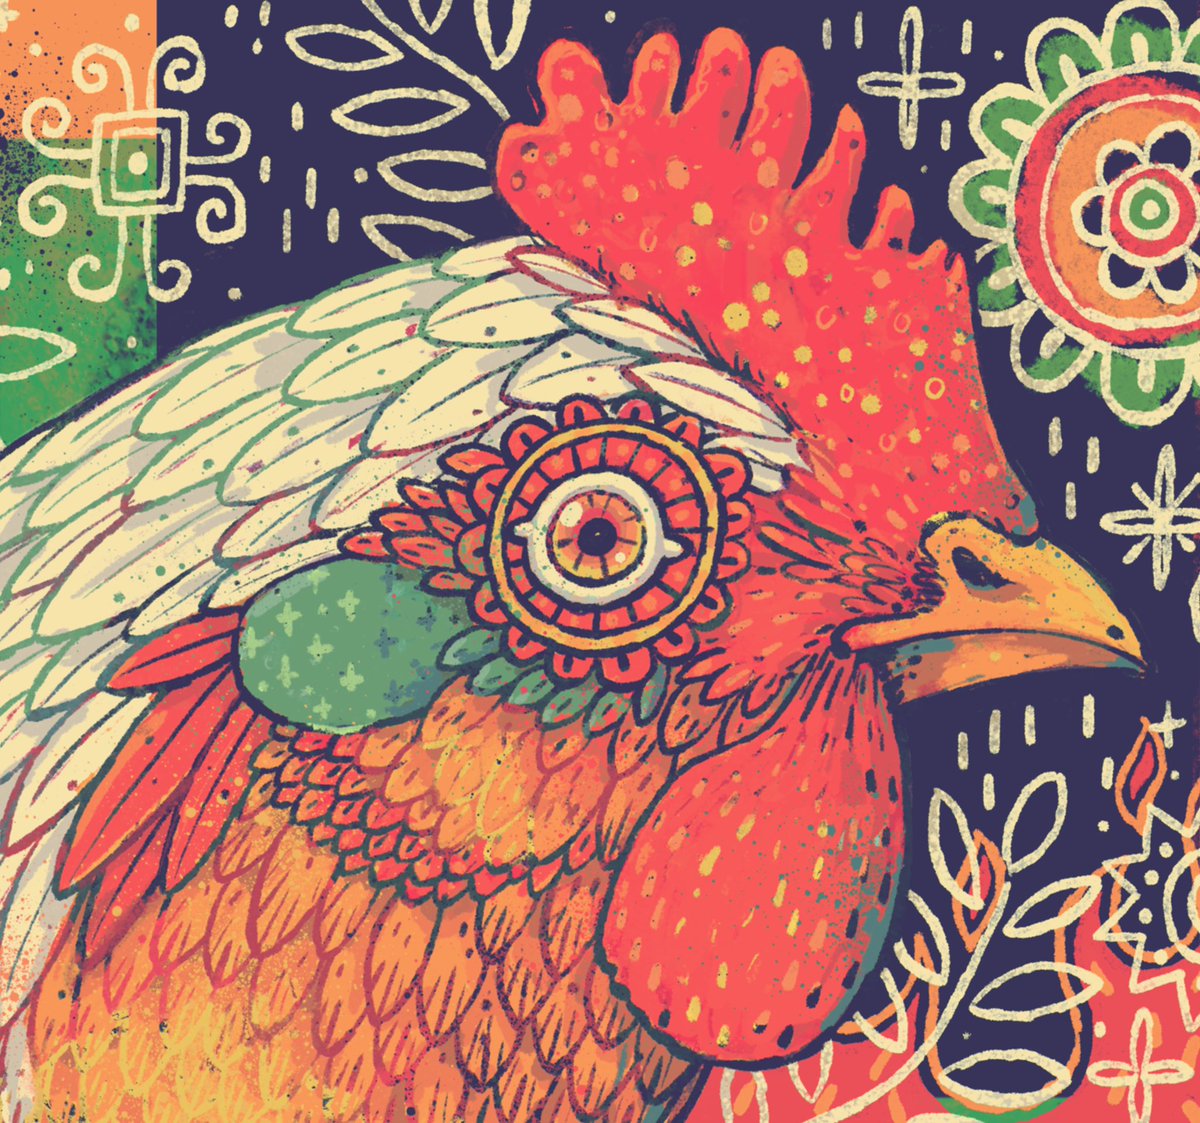 Calaveras y polllitos - a mix of some of my favoritos :) for this new Mexican 🇲🇽 mural for #juanpollo CA 💀 🐓 😋 🌵 yummy! #illustration #mexican #chicken #mural #quepadre #vivamexico #lovemexico #roastery #polloasado #stevesimpson #mariachi